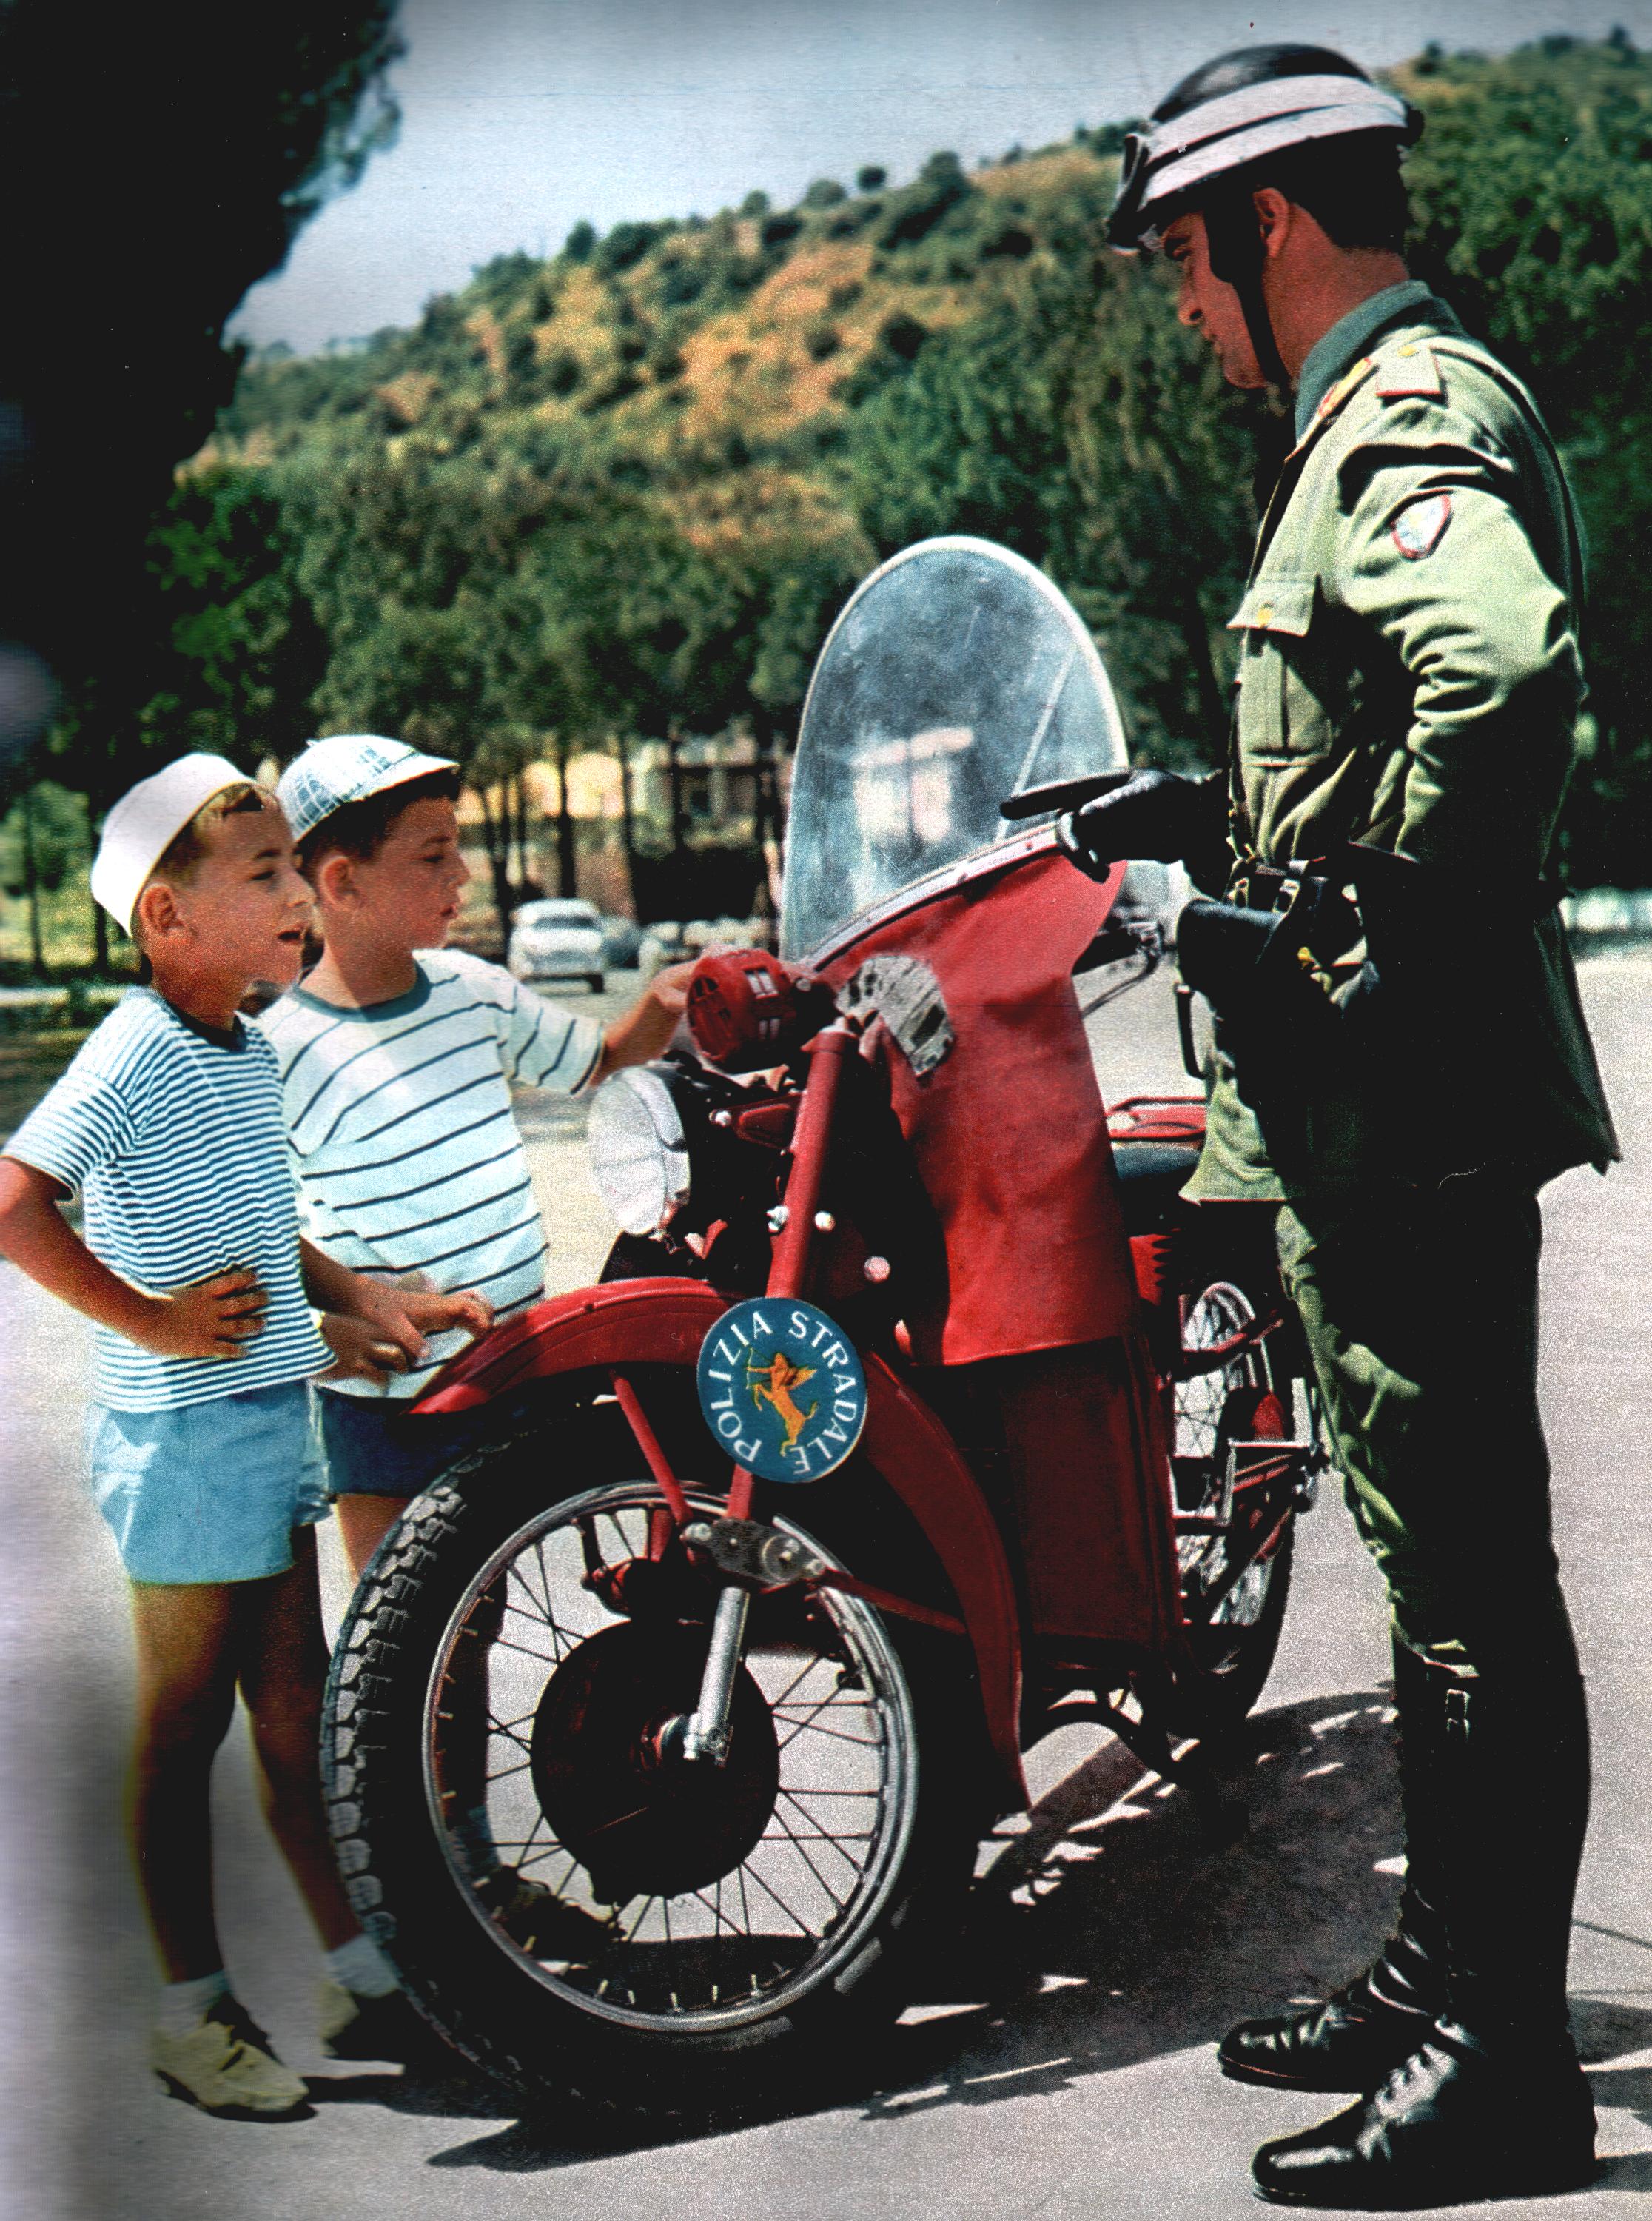 1959, motociclisti della stradale con moto Guzzi 500 insieme a due bambini